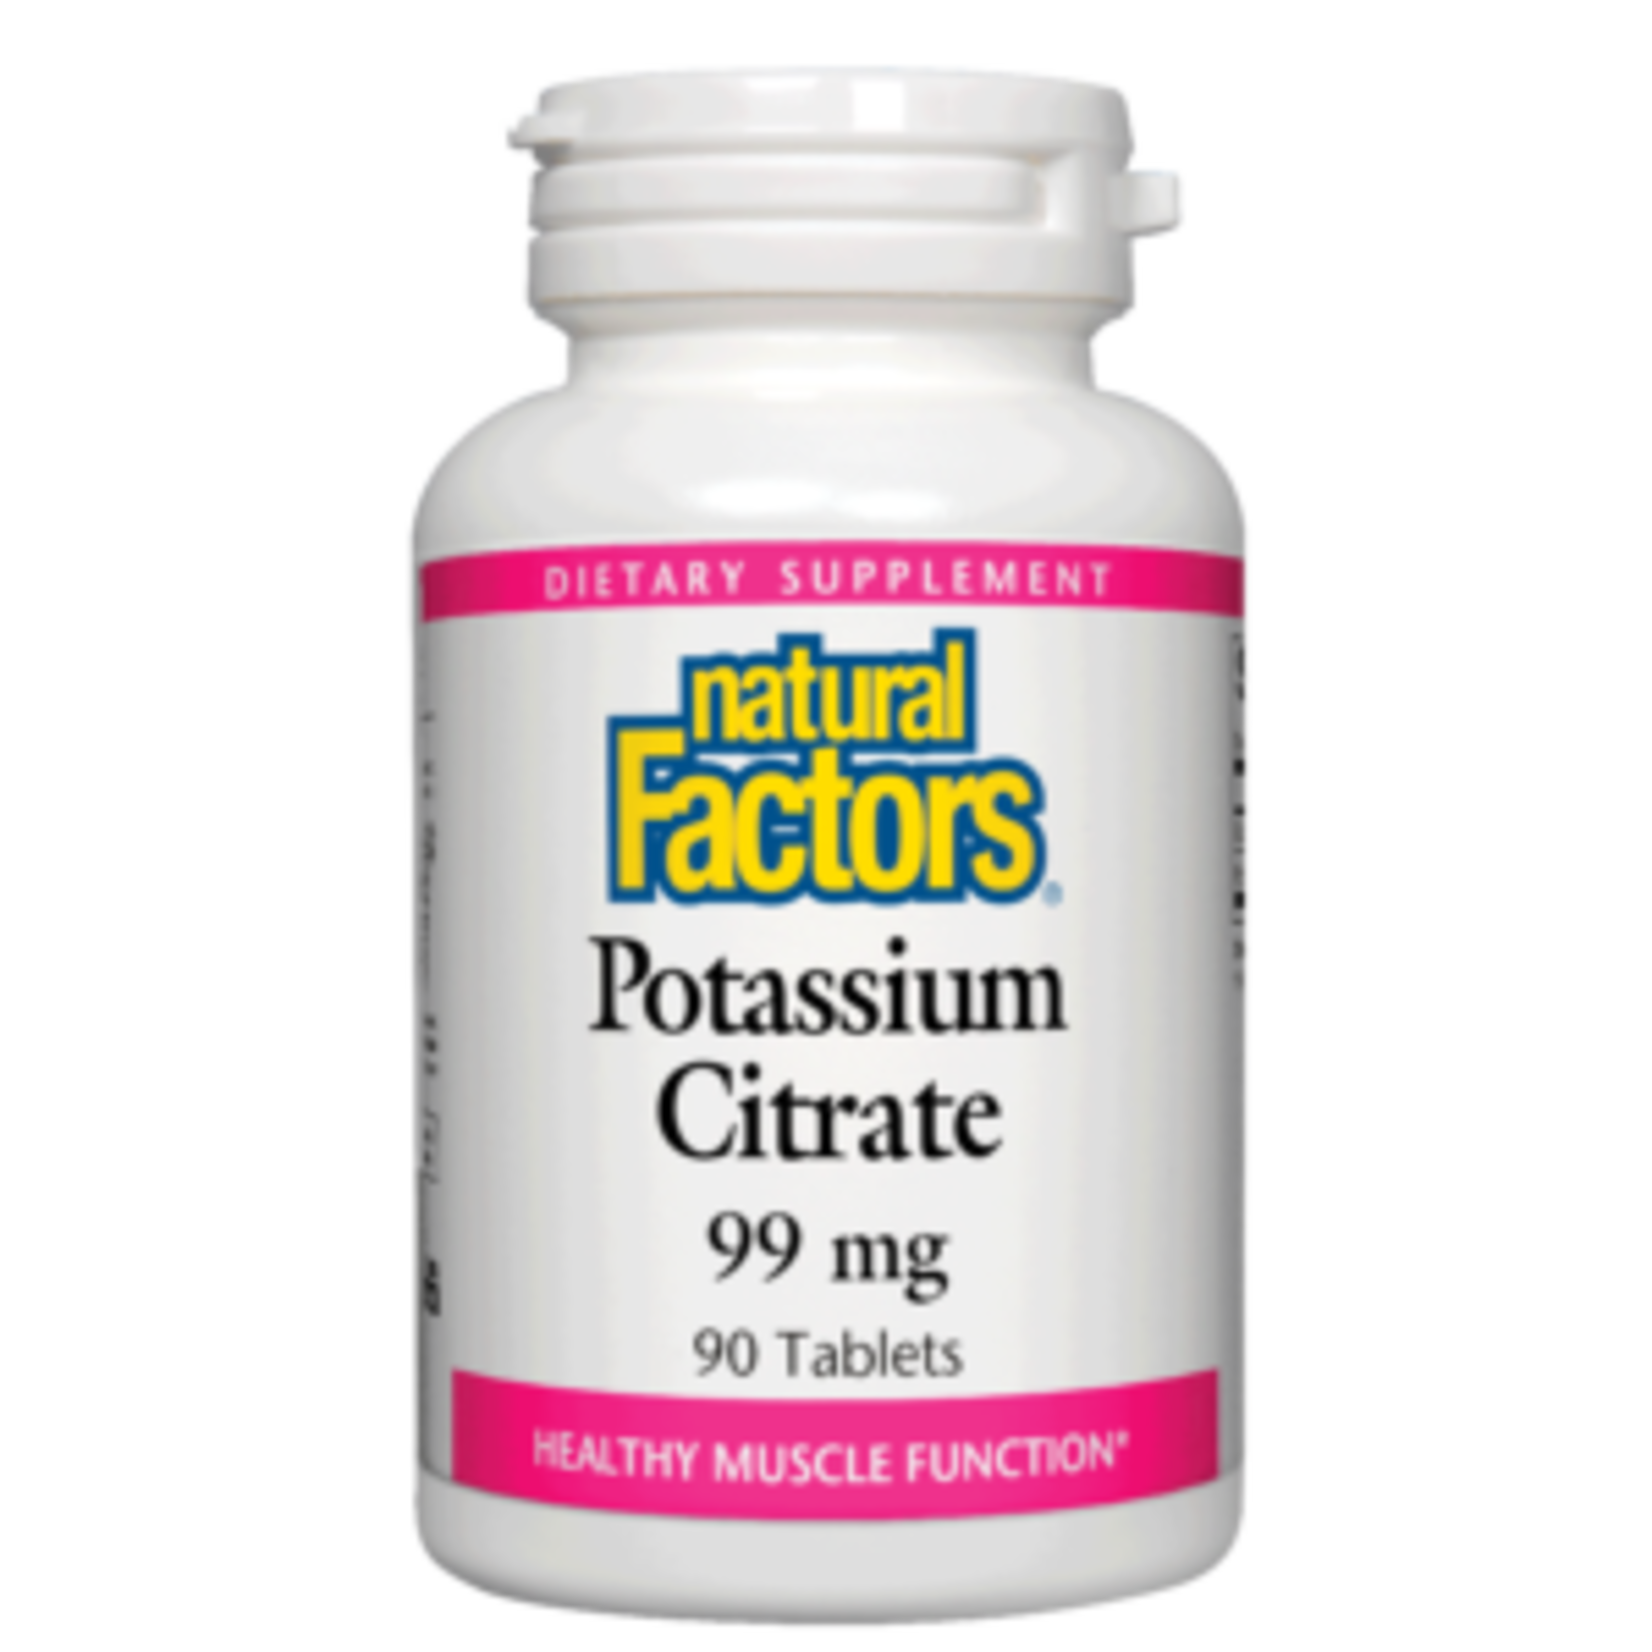 Natural Factors Natural Factors - Potassium Citrate 99 mg - 90 Tablets